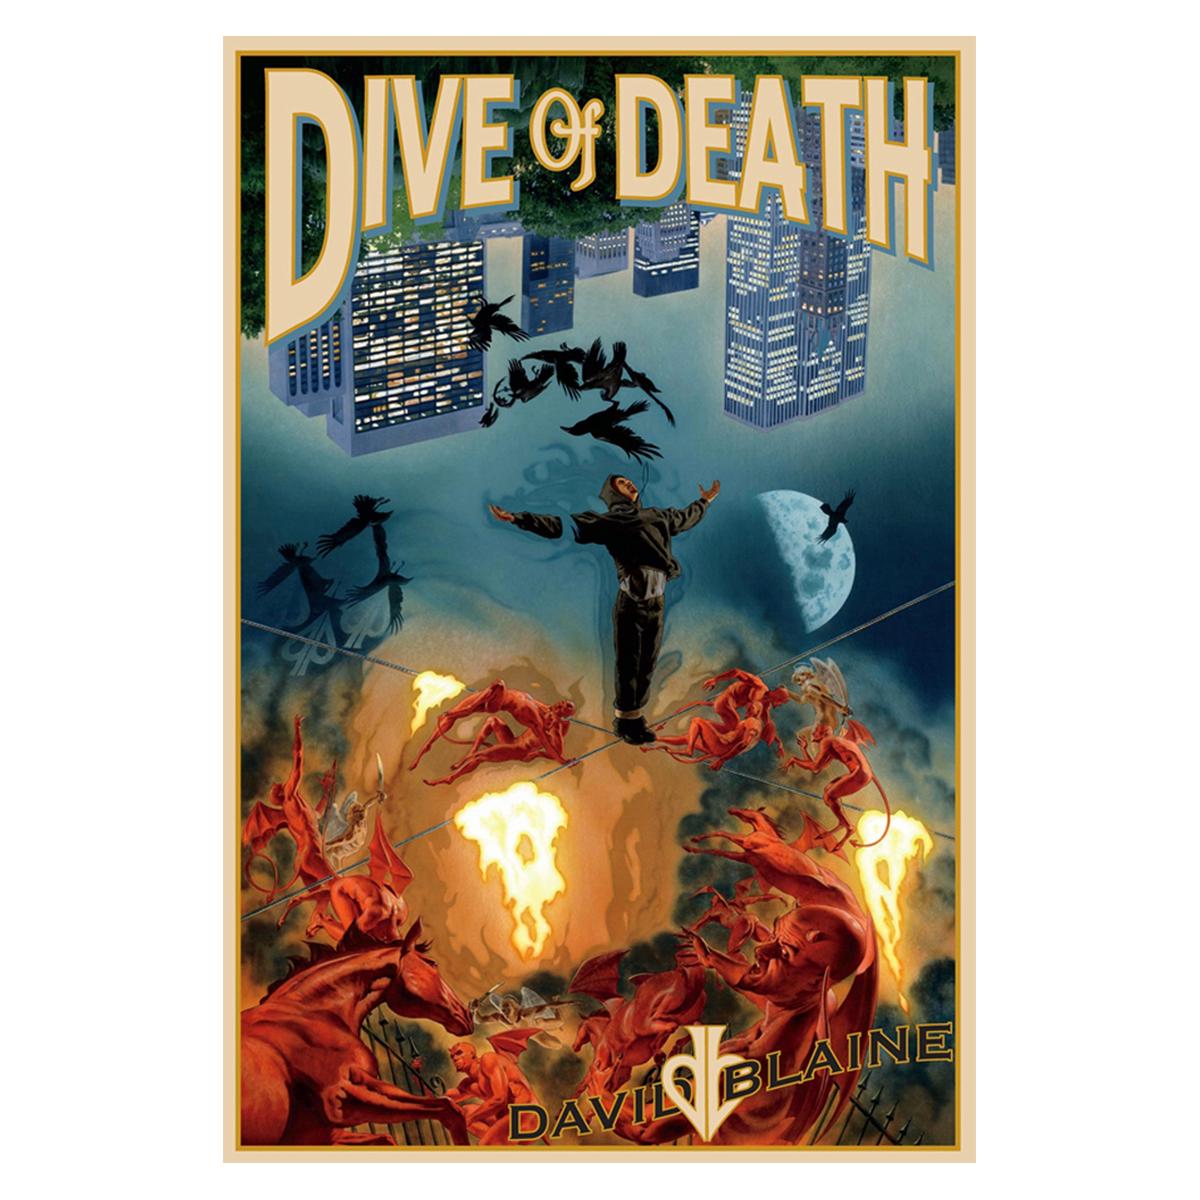 David Blaine: Dive of Death